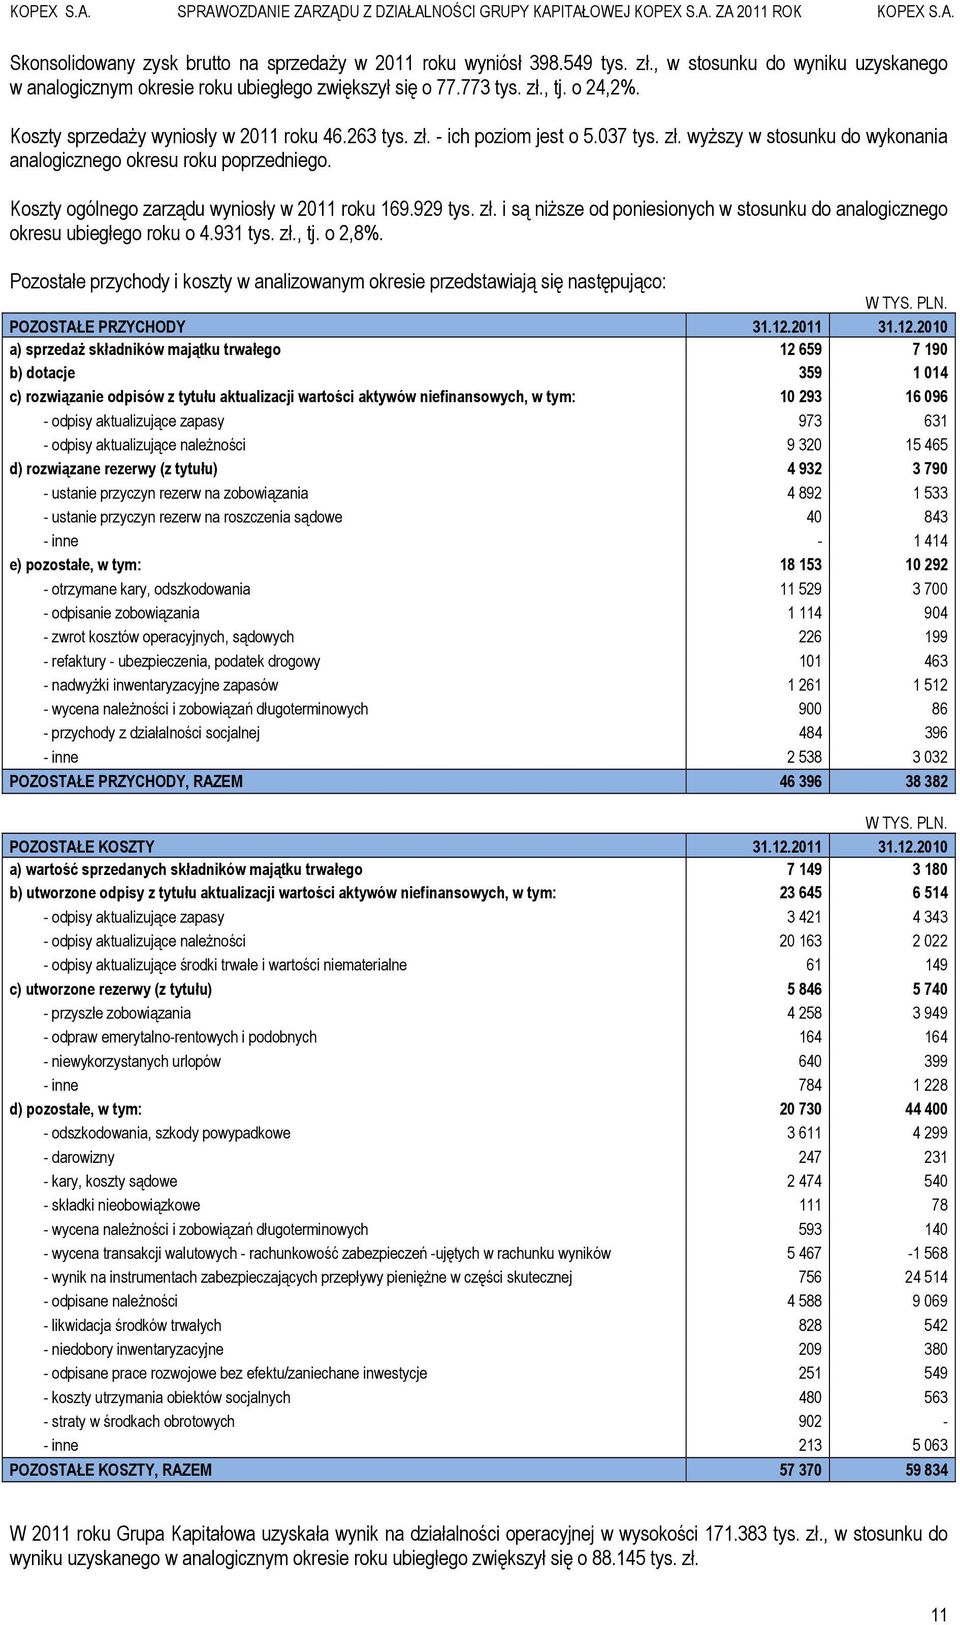 Koszty ogólnego zarządu wyniosły w 2011 roku 169.929 tys. zł. i są niższe od poniesionych w stosunku do analogicznego okresu ubiegłego roku o 4.931 tys. zł., tj. o 2,8%.